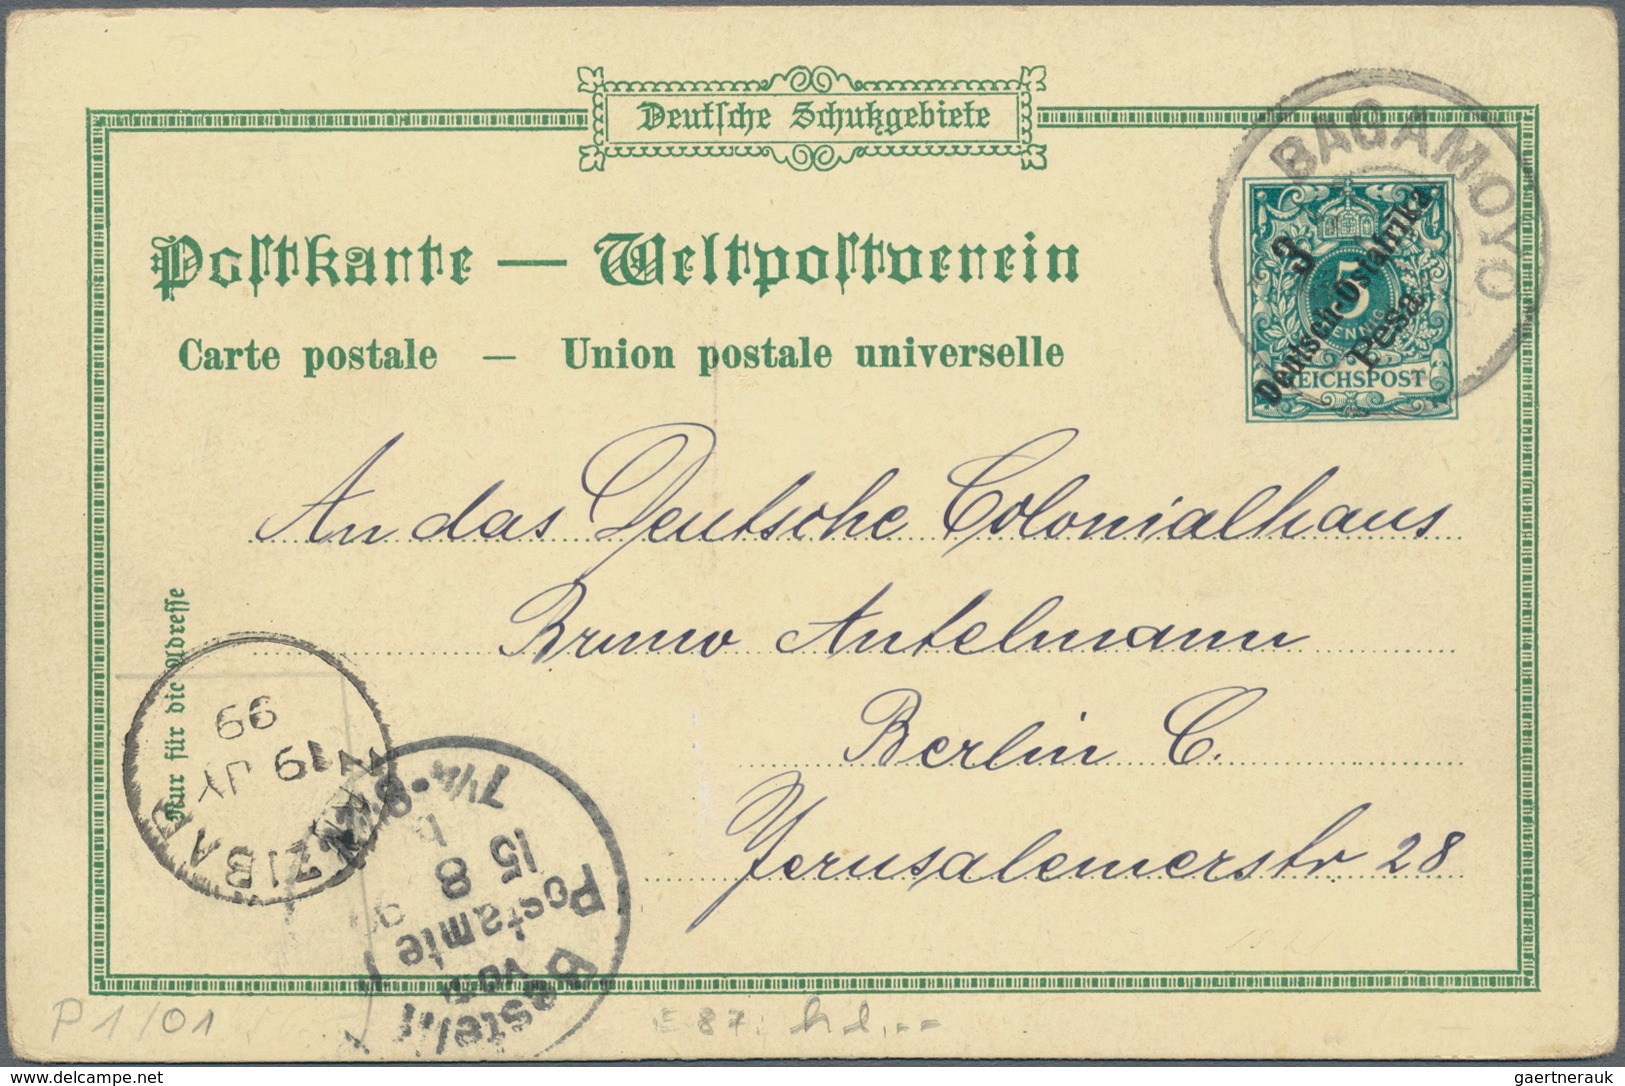 Deutsch-Ostafrika - Ganzsachen: 1898/99, vier gebrauchte private Ganzsachenpostkarten alle mit Wst.